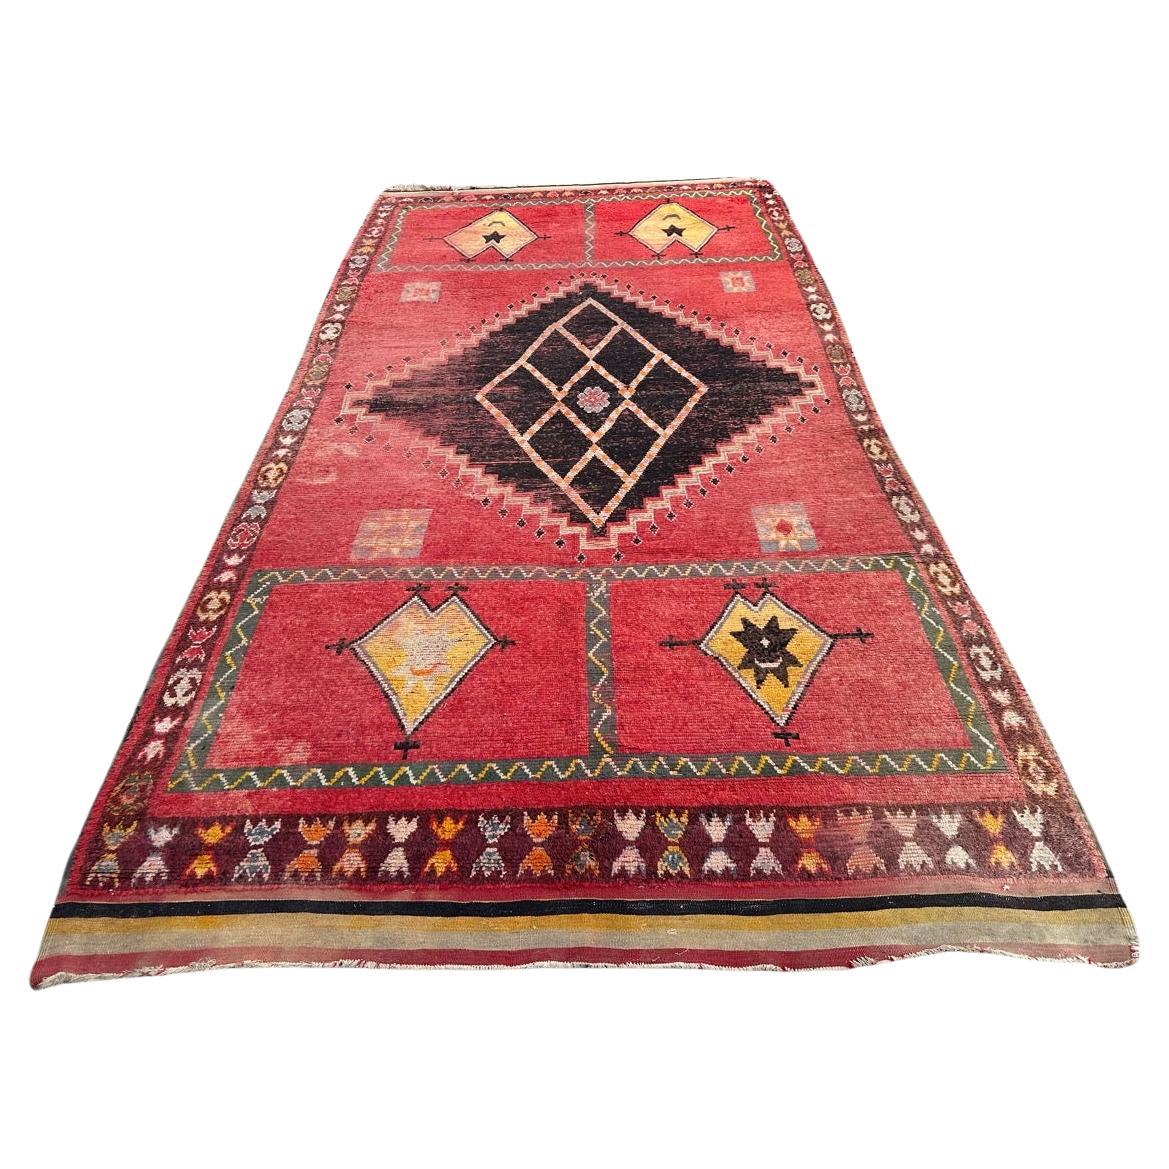 Bobyrug’s nice long Moroccan tribal rug For Sale